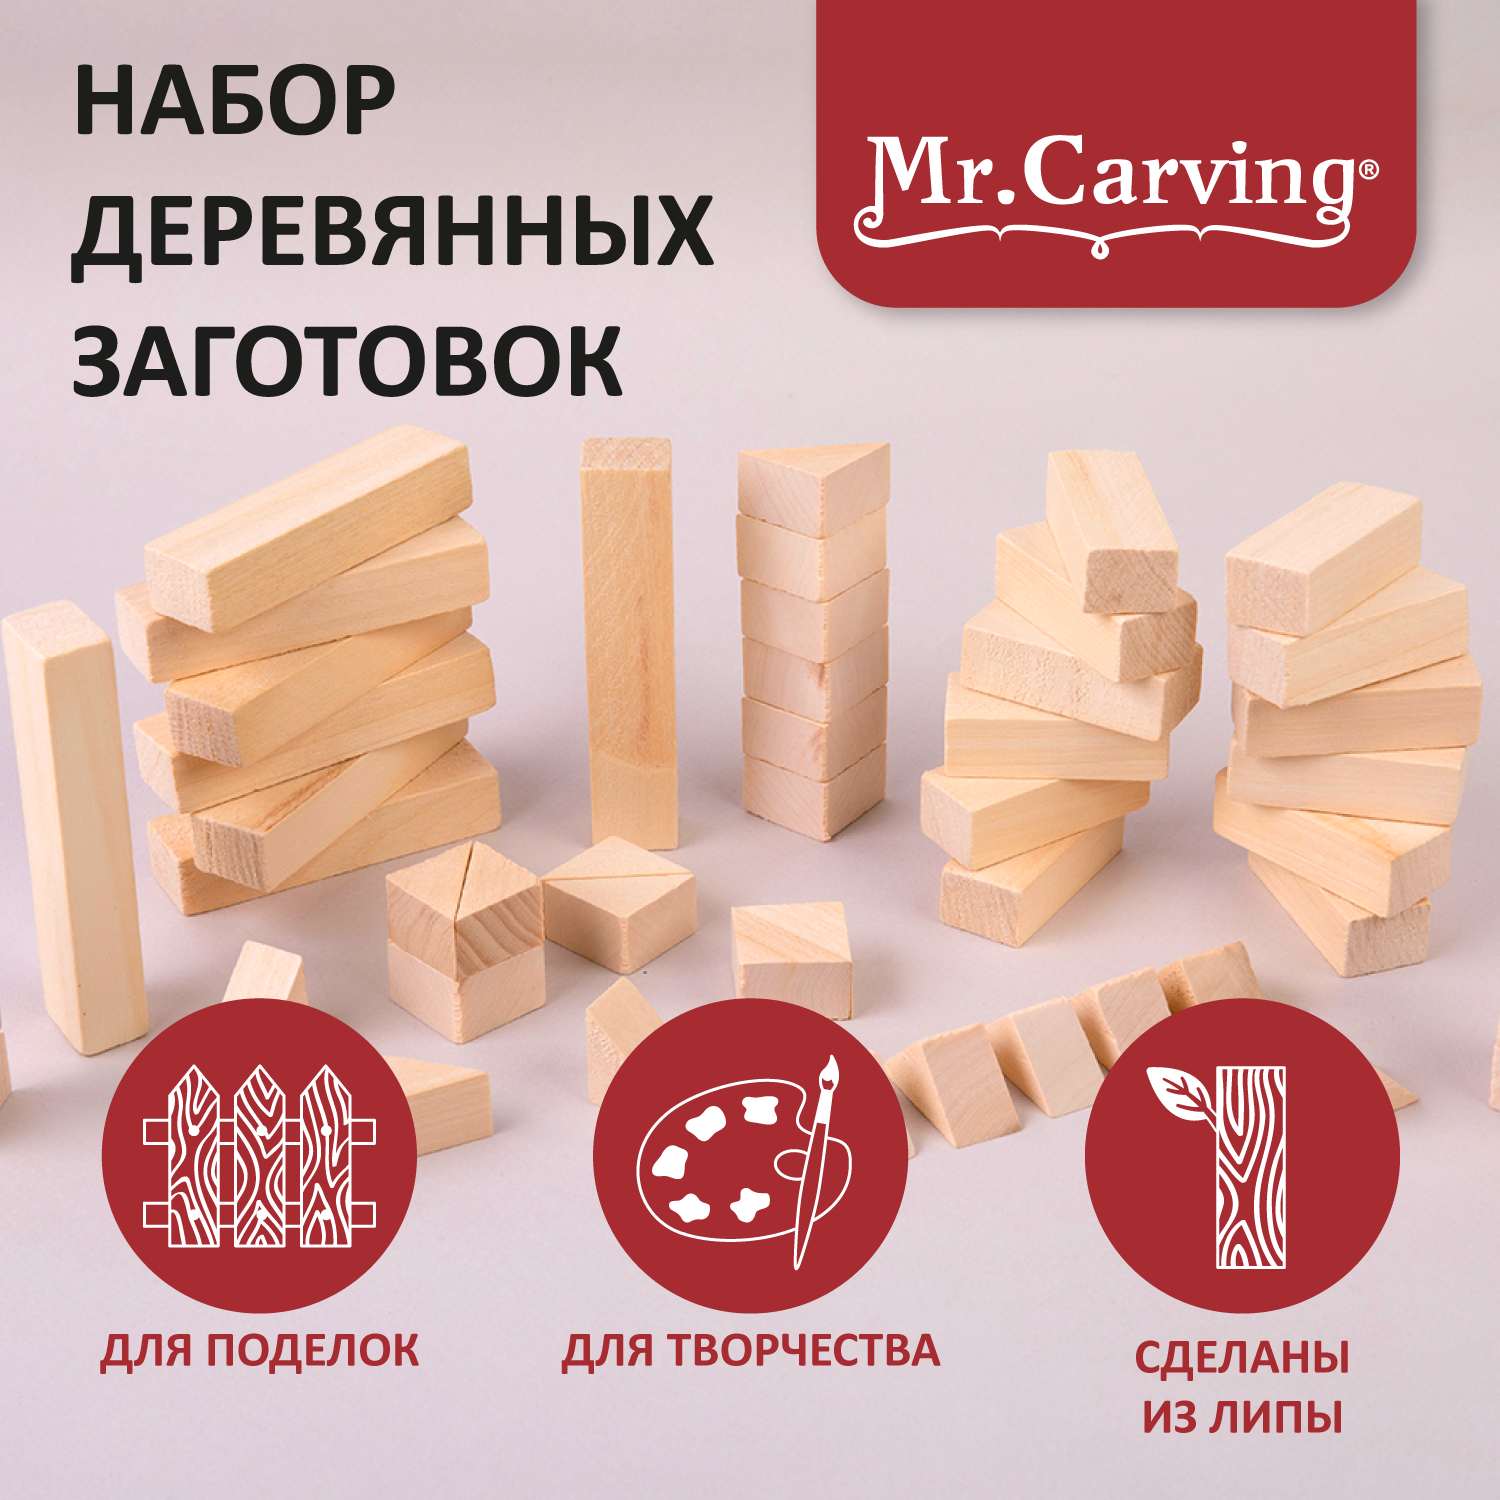 Набор декоративных заготовок "Треугольники и бруски" из липы 55 шт "Mr. Carving" П-03